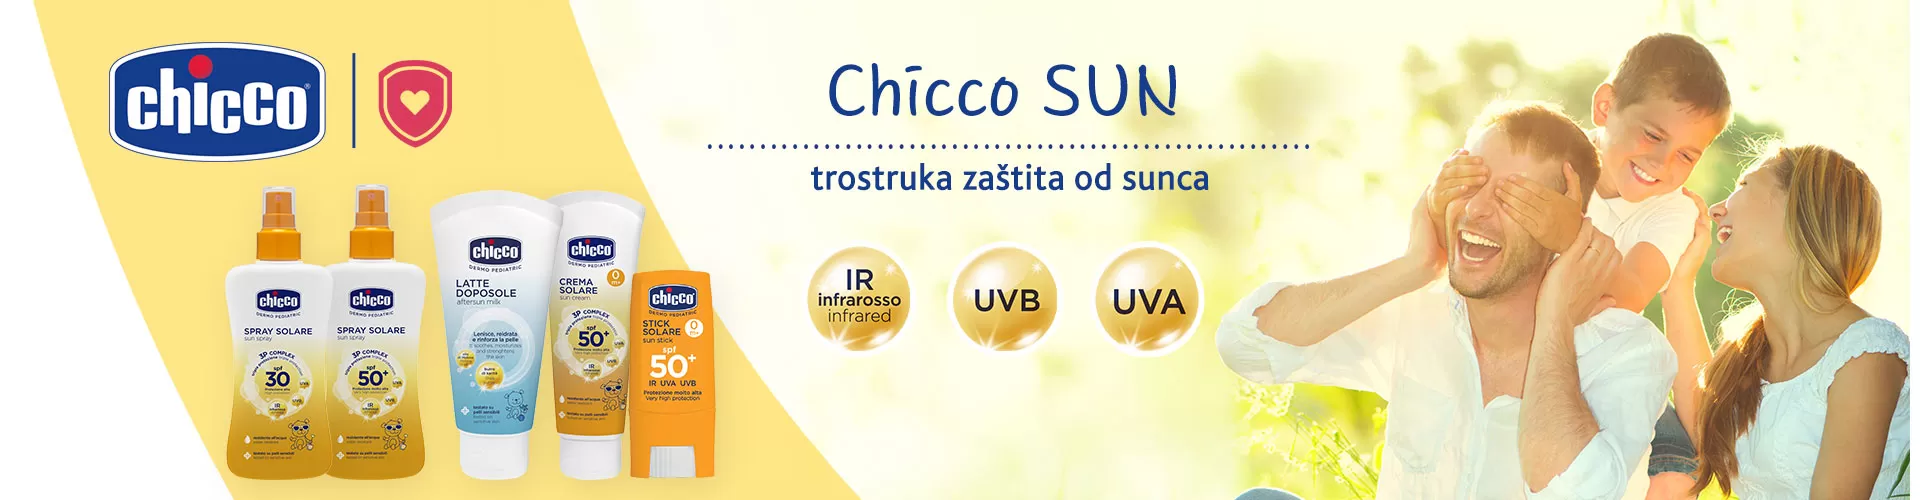 Chicco Sun